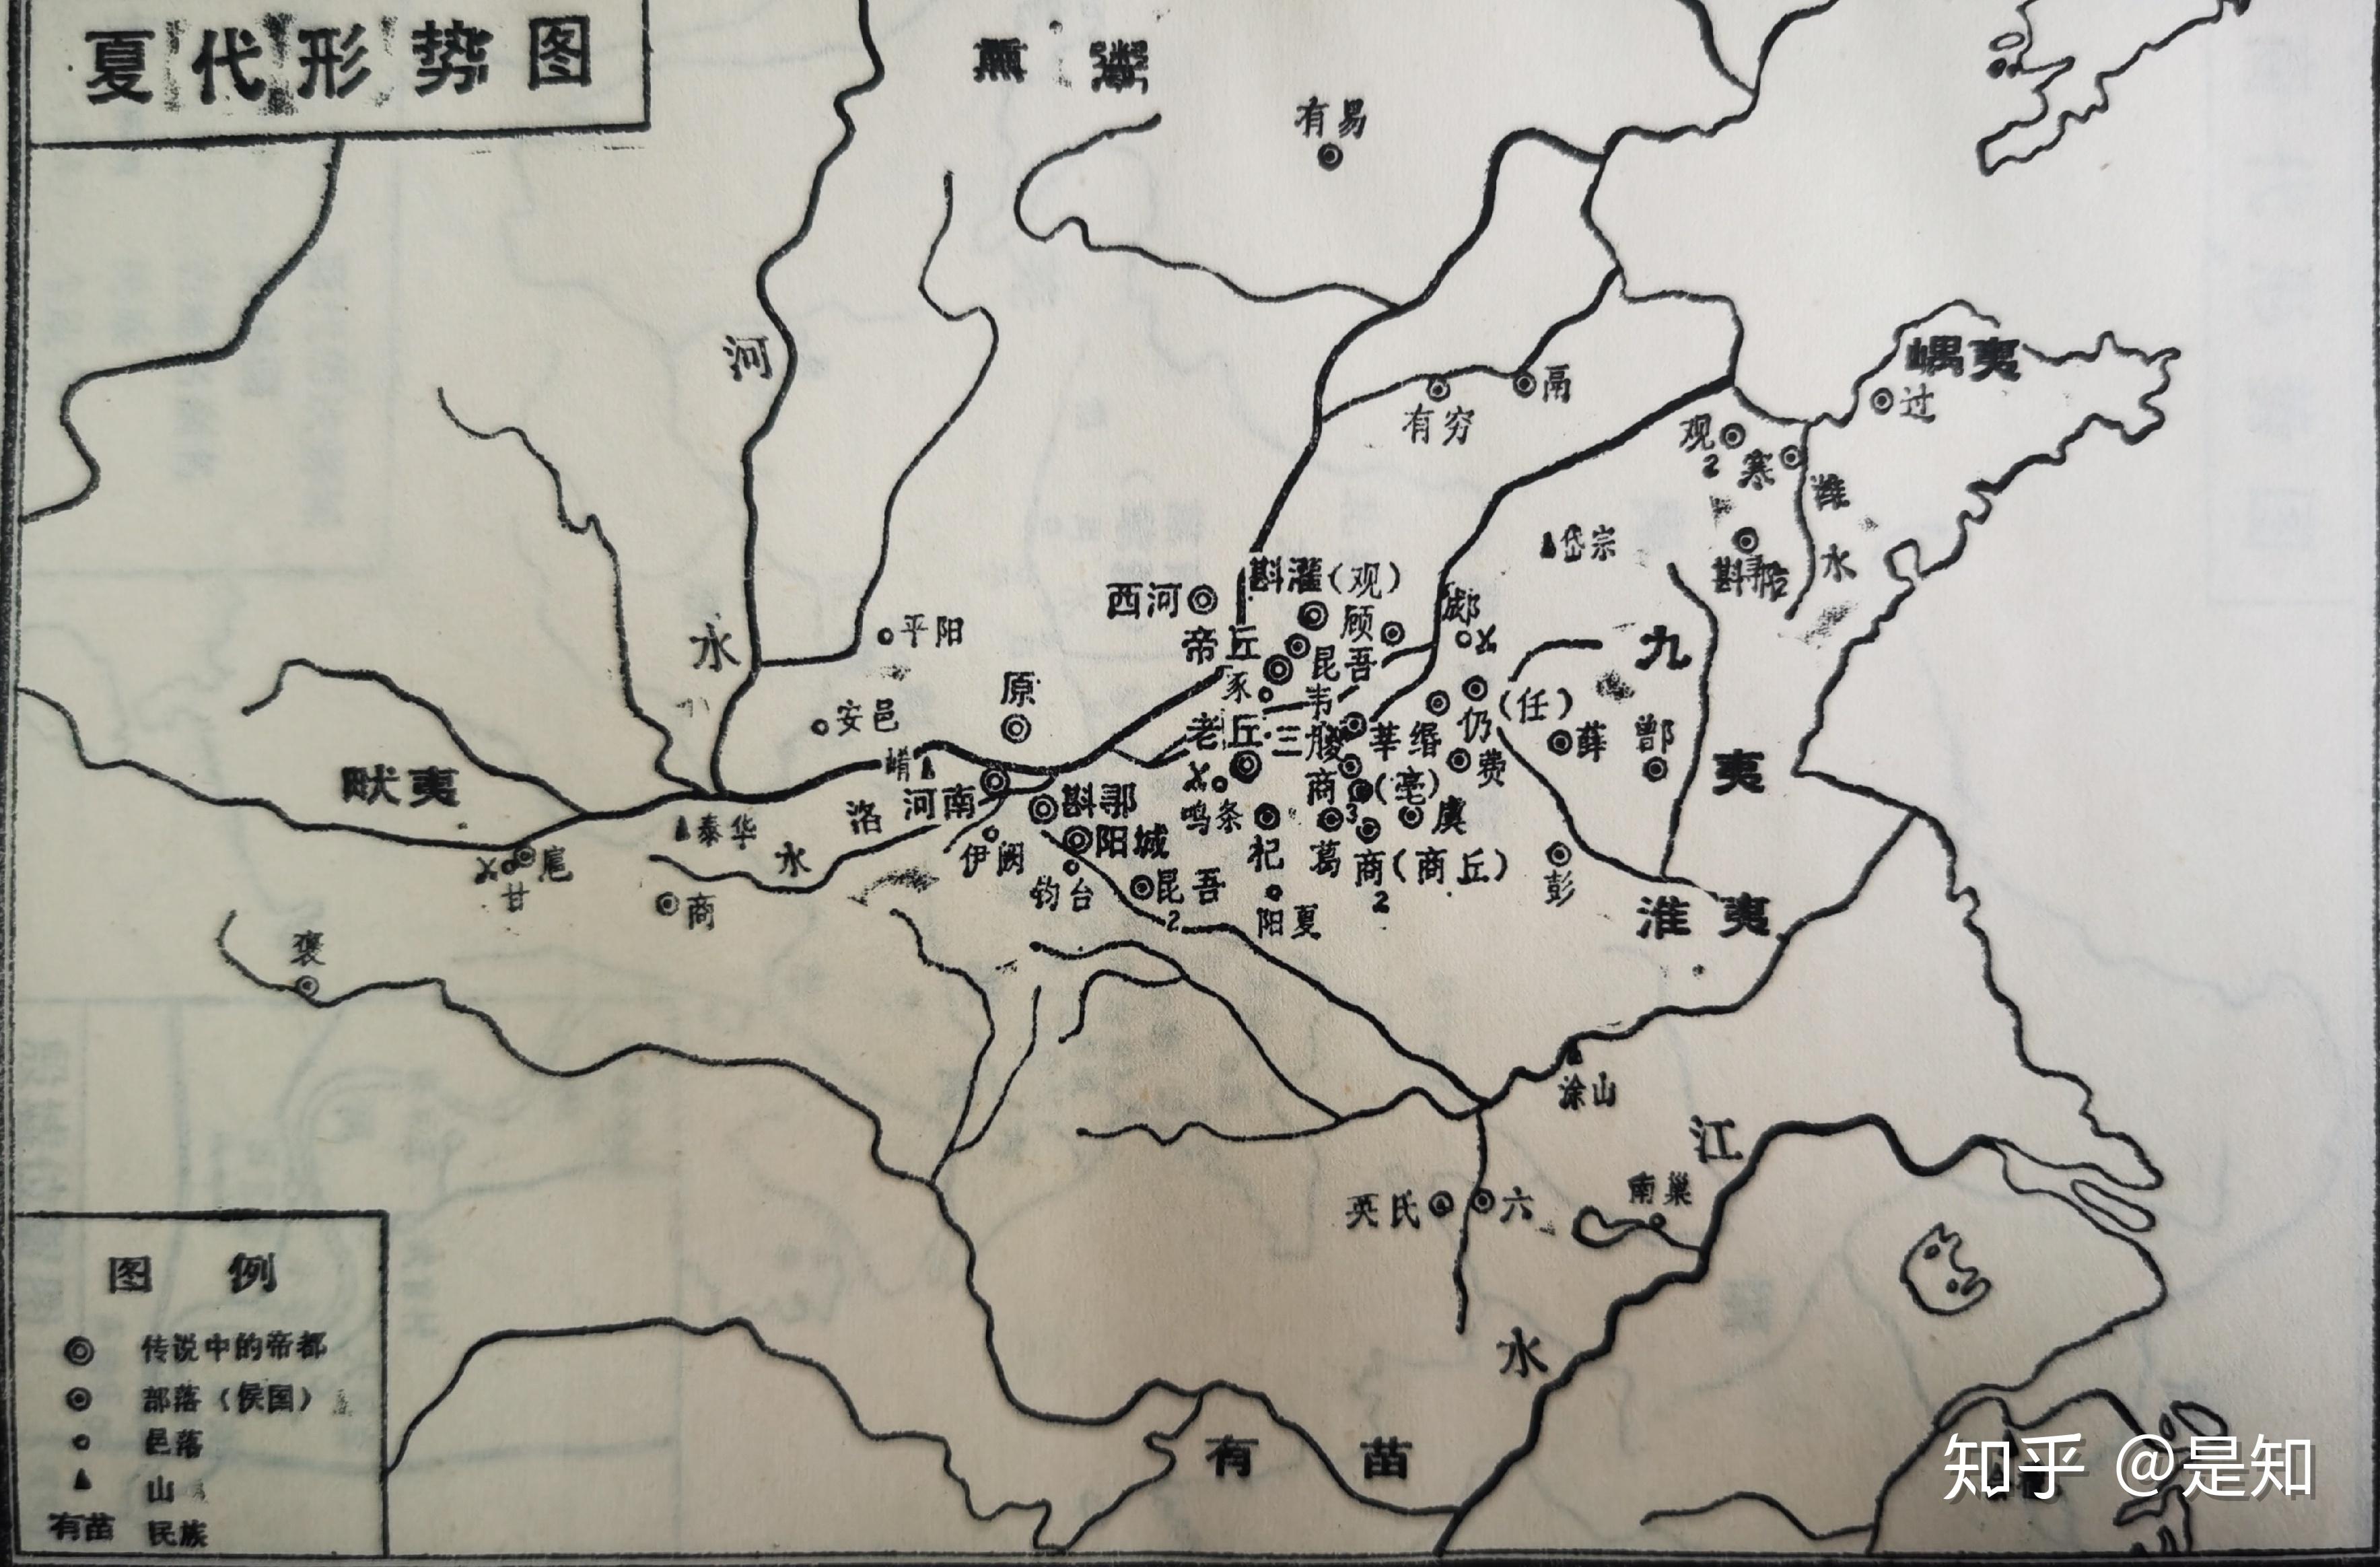 古籍探索基础功训练之历史地图(夏代) 